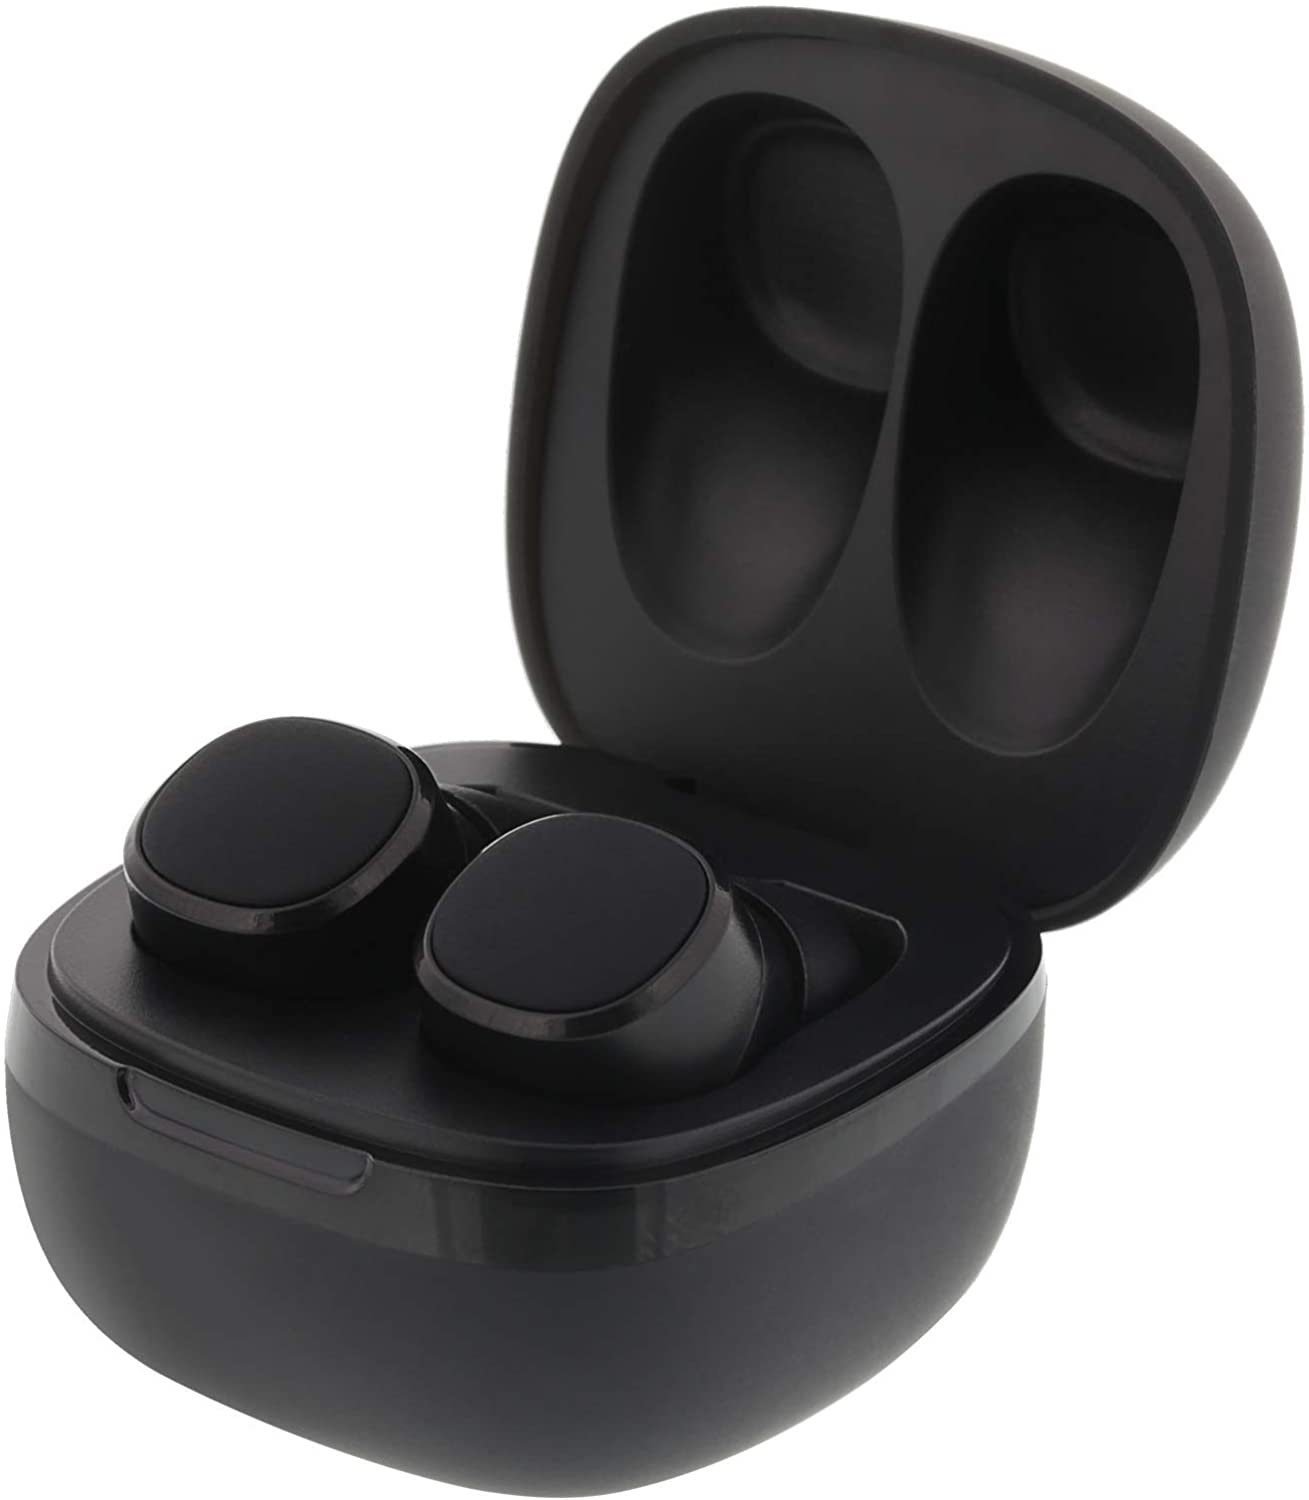 STREETZ Kabellose Premi Stereo Kopfhörer, Ear Kabellose mit Earbuds Streetz Bluetooth-Kopfhörer (Bluetooth Earbuds) Kopfhörer, In Bluetooth In Ear